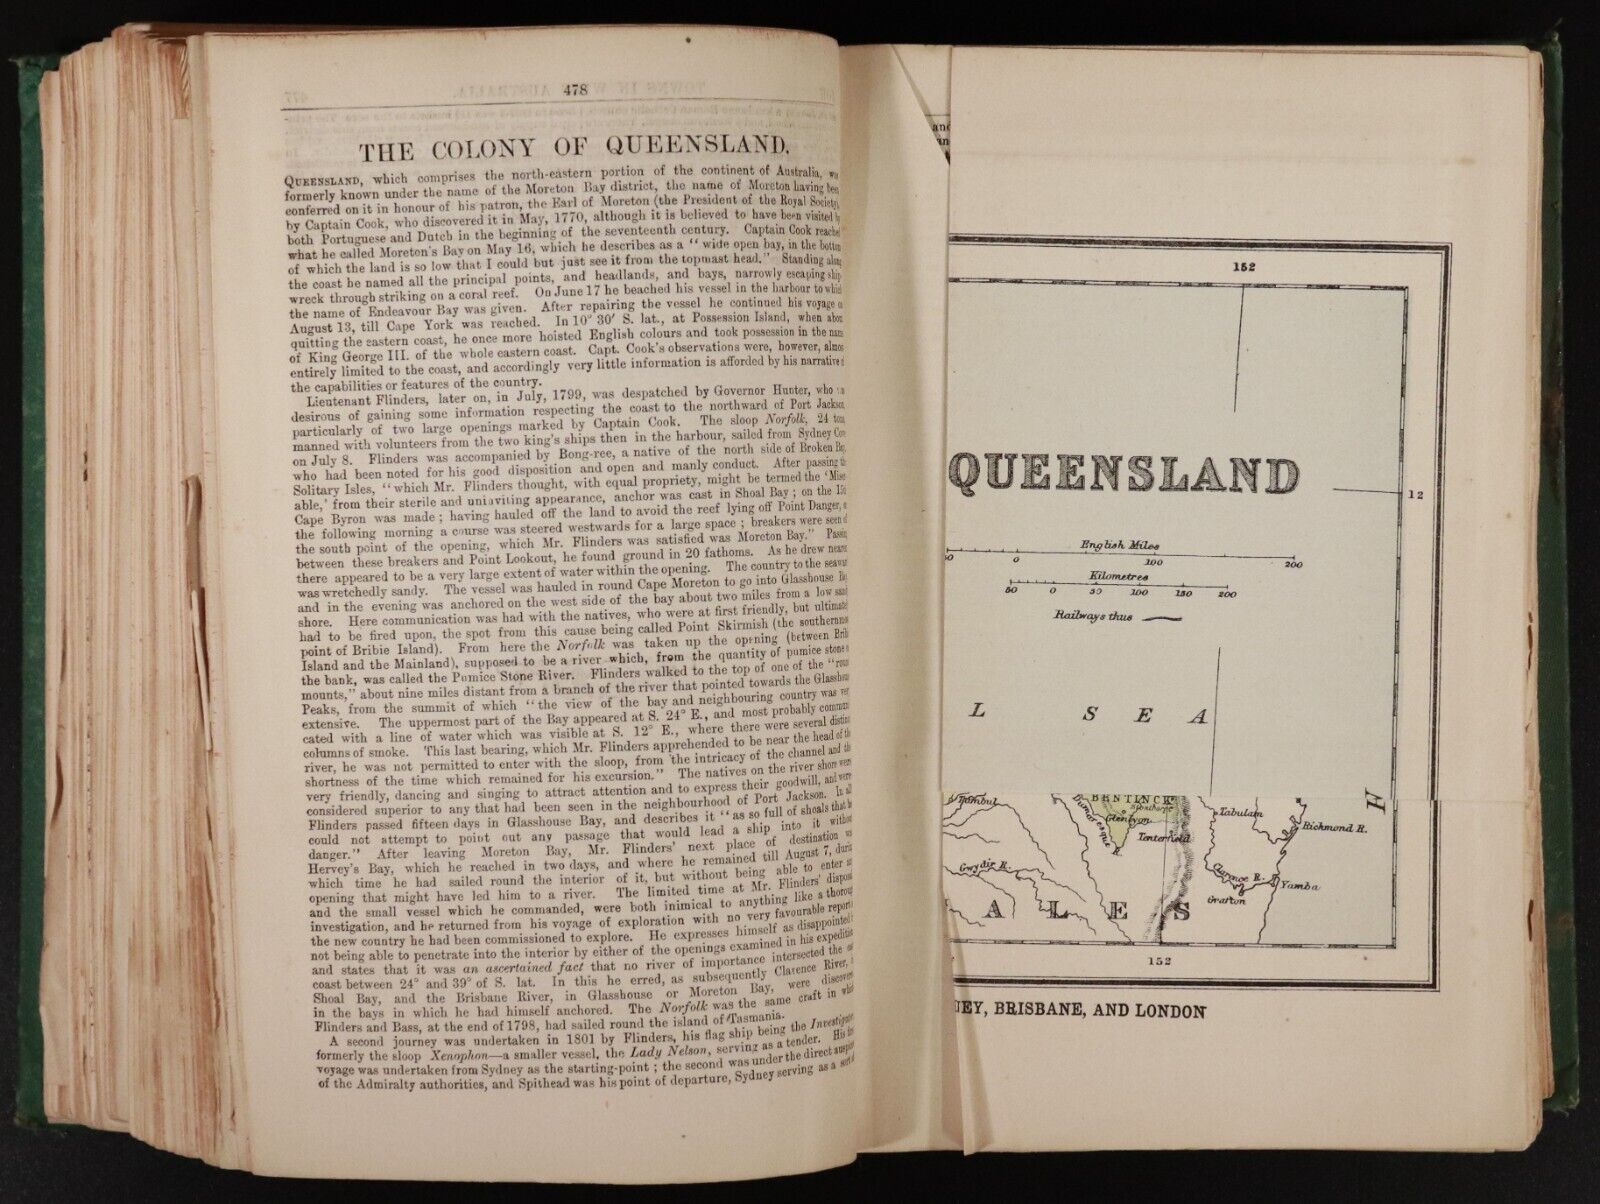 1884 The Australian Handbook & Emigration Guide Antiquarian Book Foldout Maps